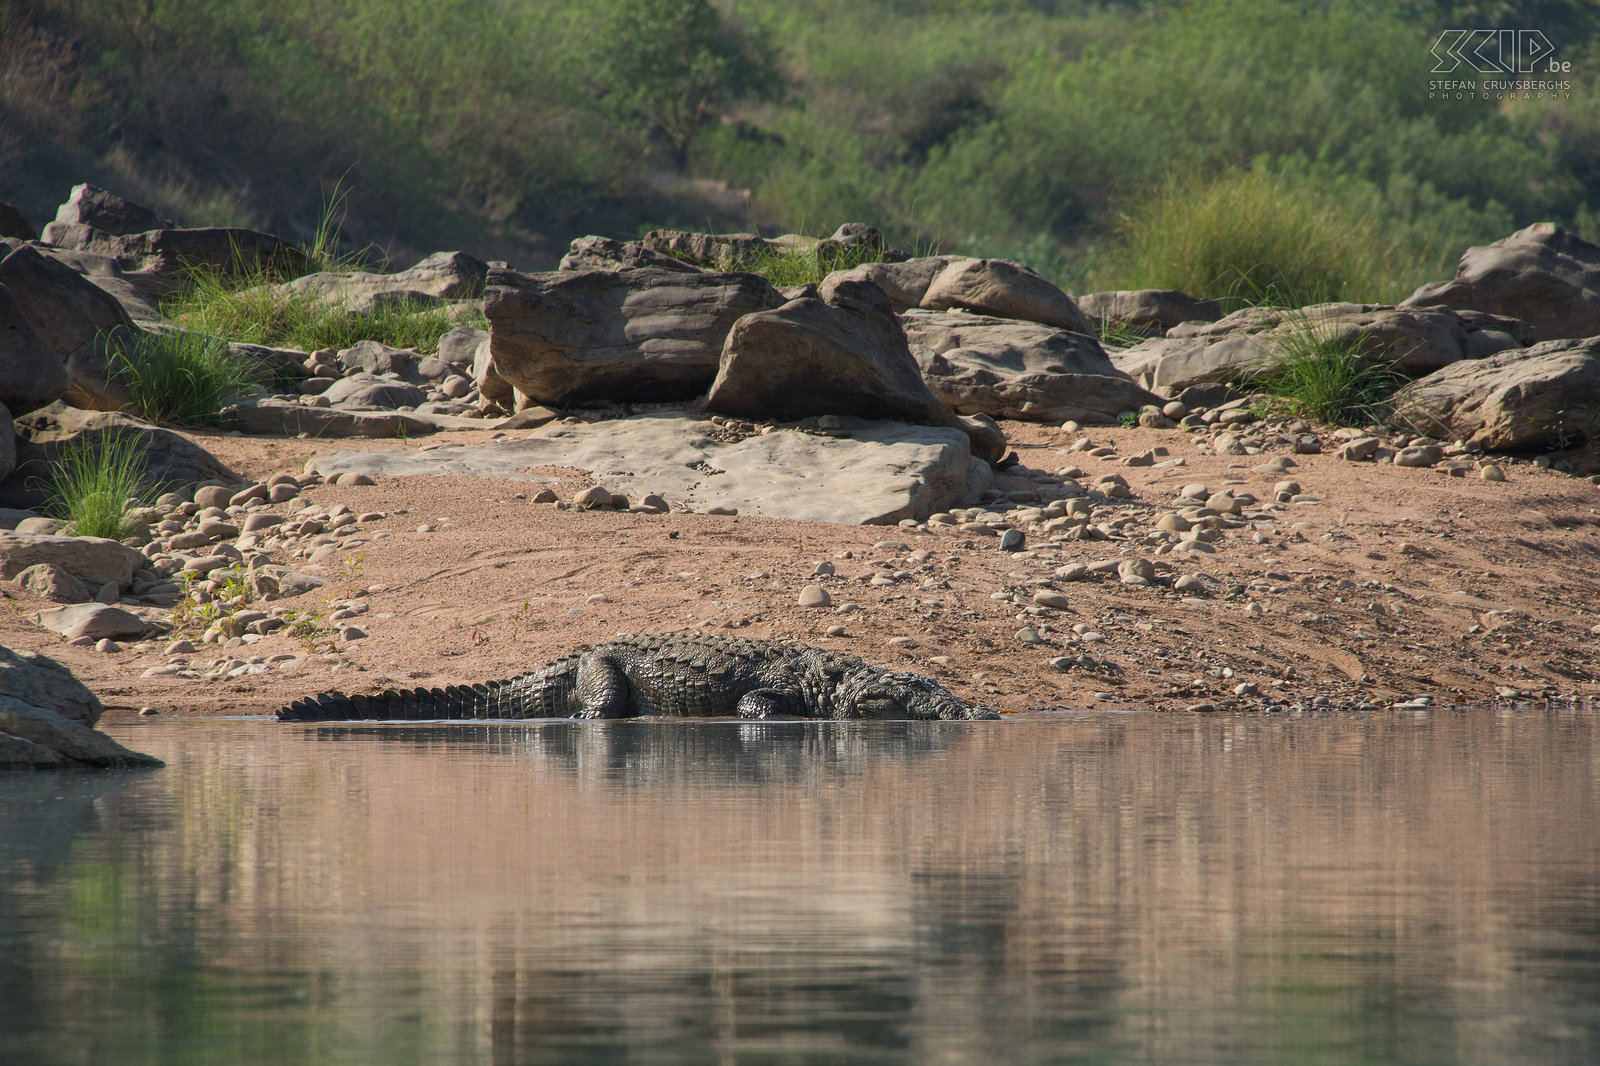 Panna - Krokodil Een krokodil in de Ken rivier in Panna nationaal park. Stefan Cruysberghs